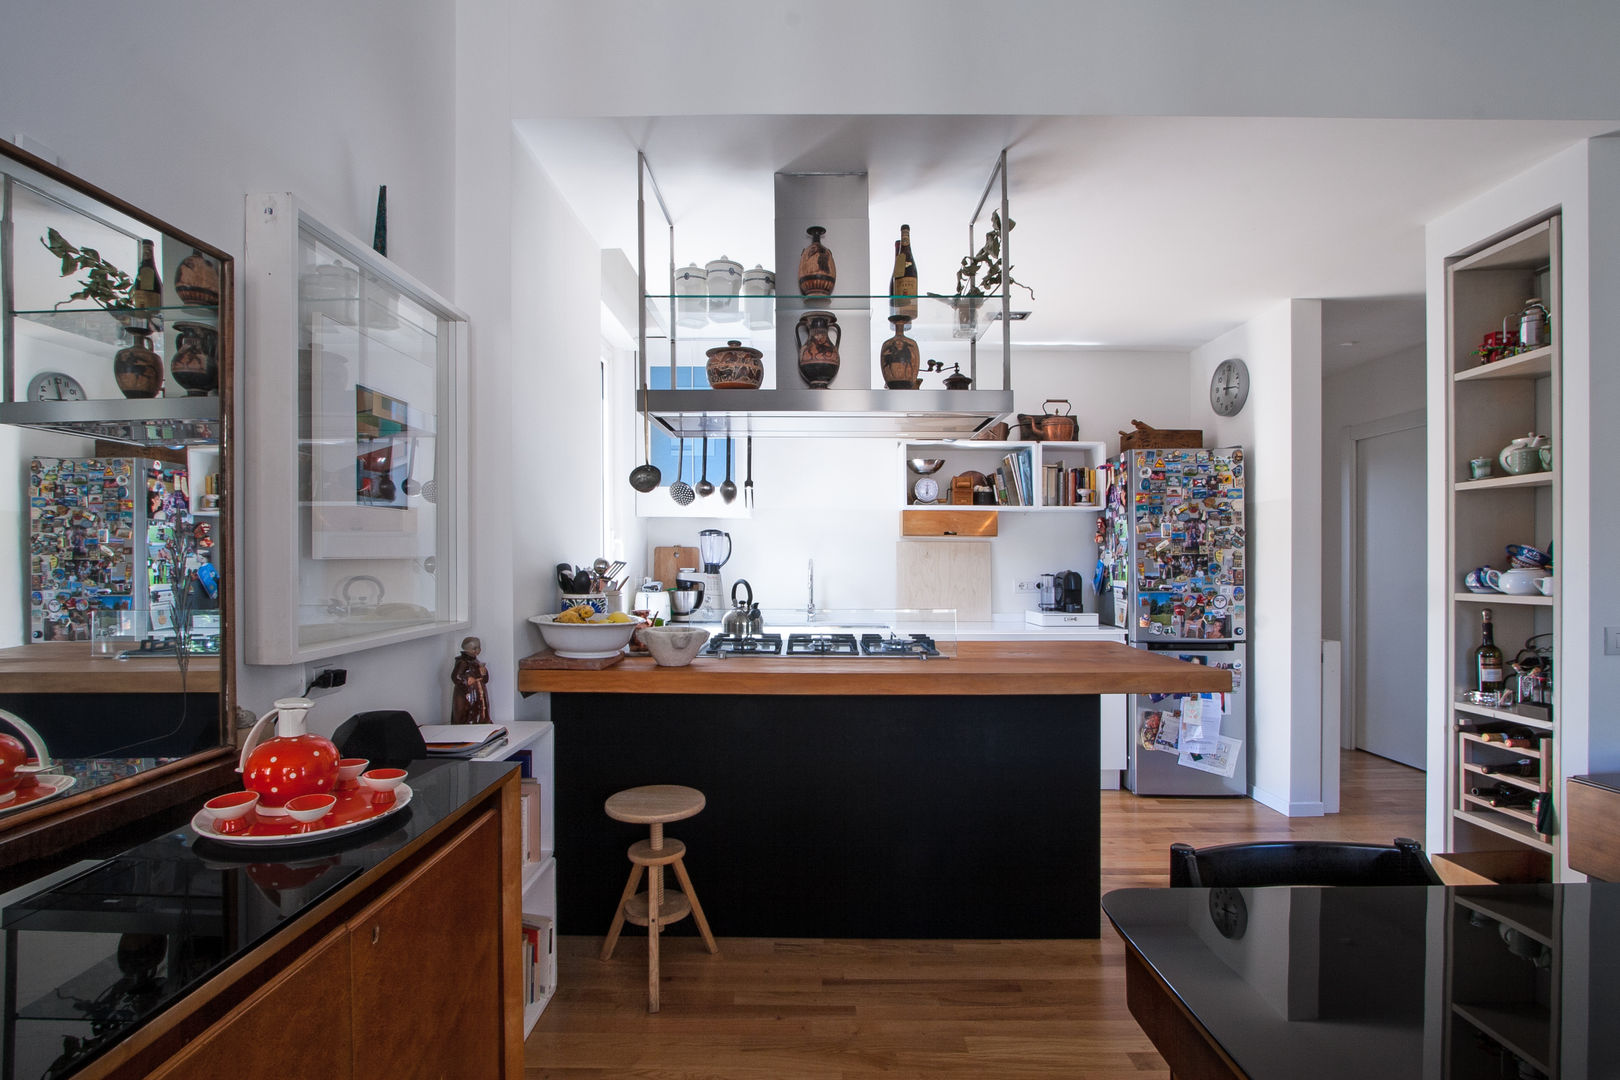 3VM_Ristrutturazione di una casa-atelier d’artista a Como, Chantal Forzatti architetto Chantal Forzatti architetto Kitchen